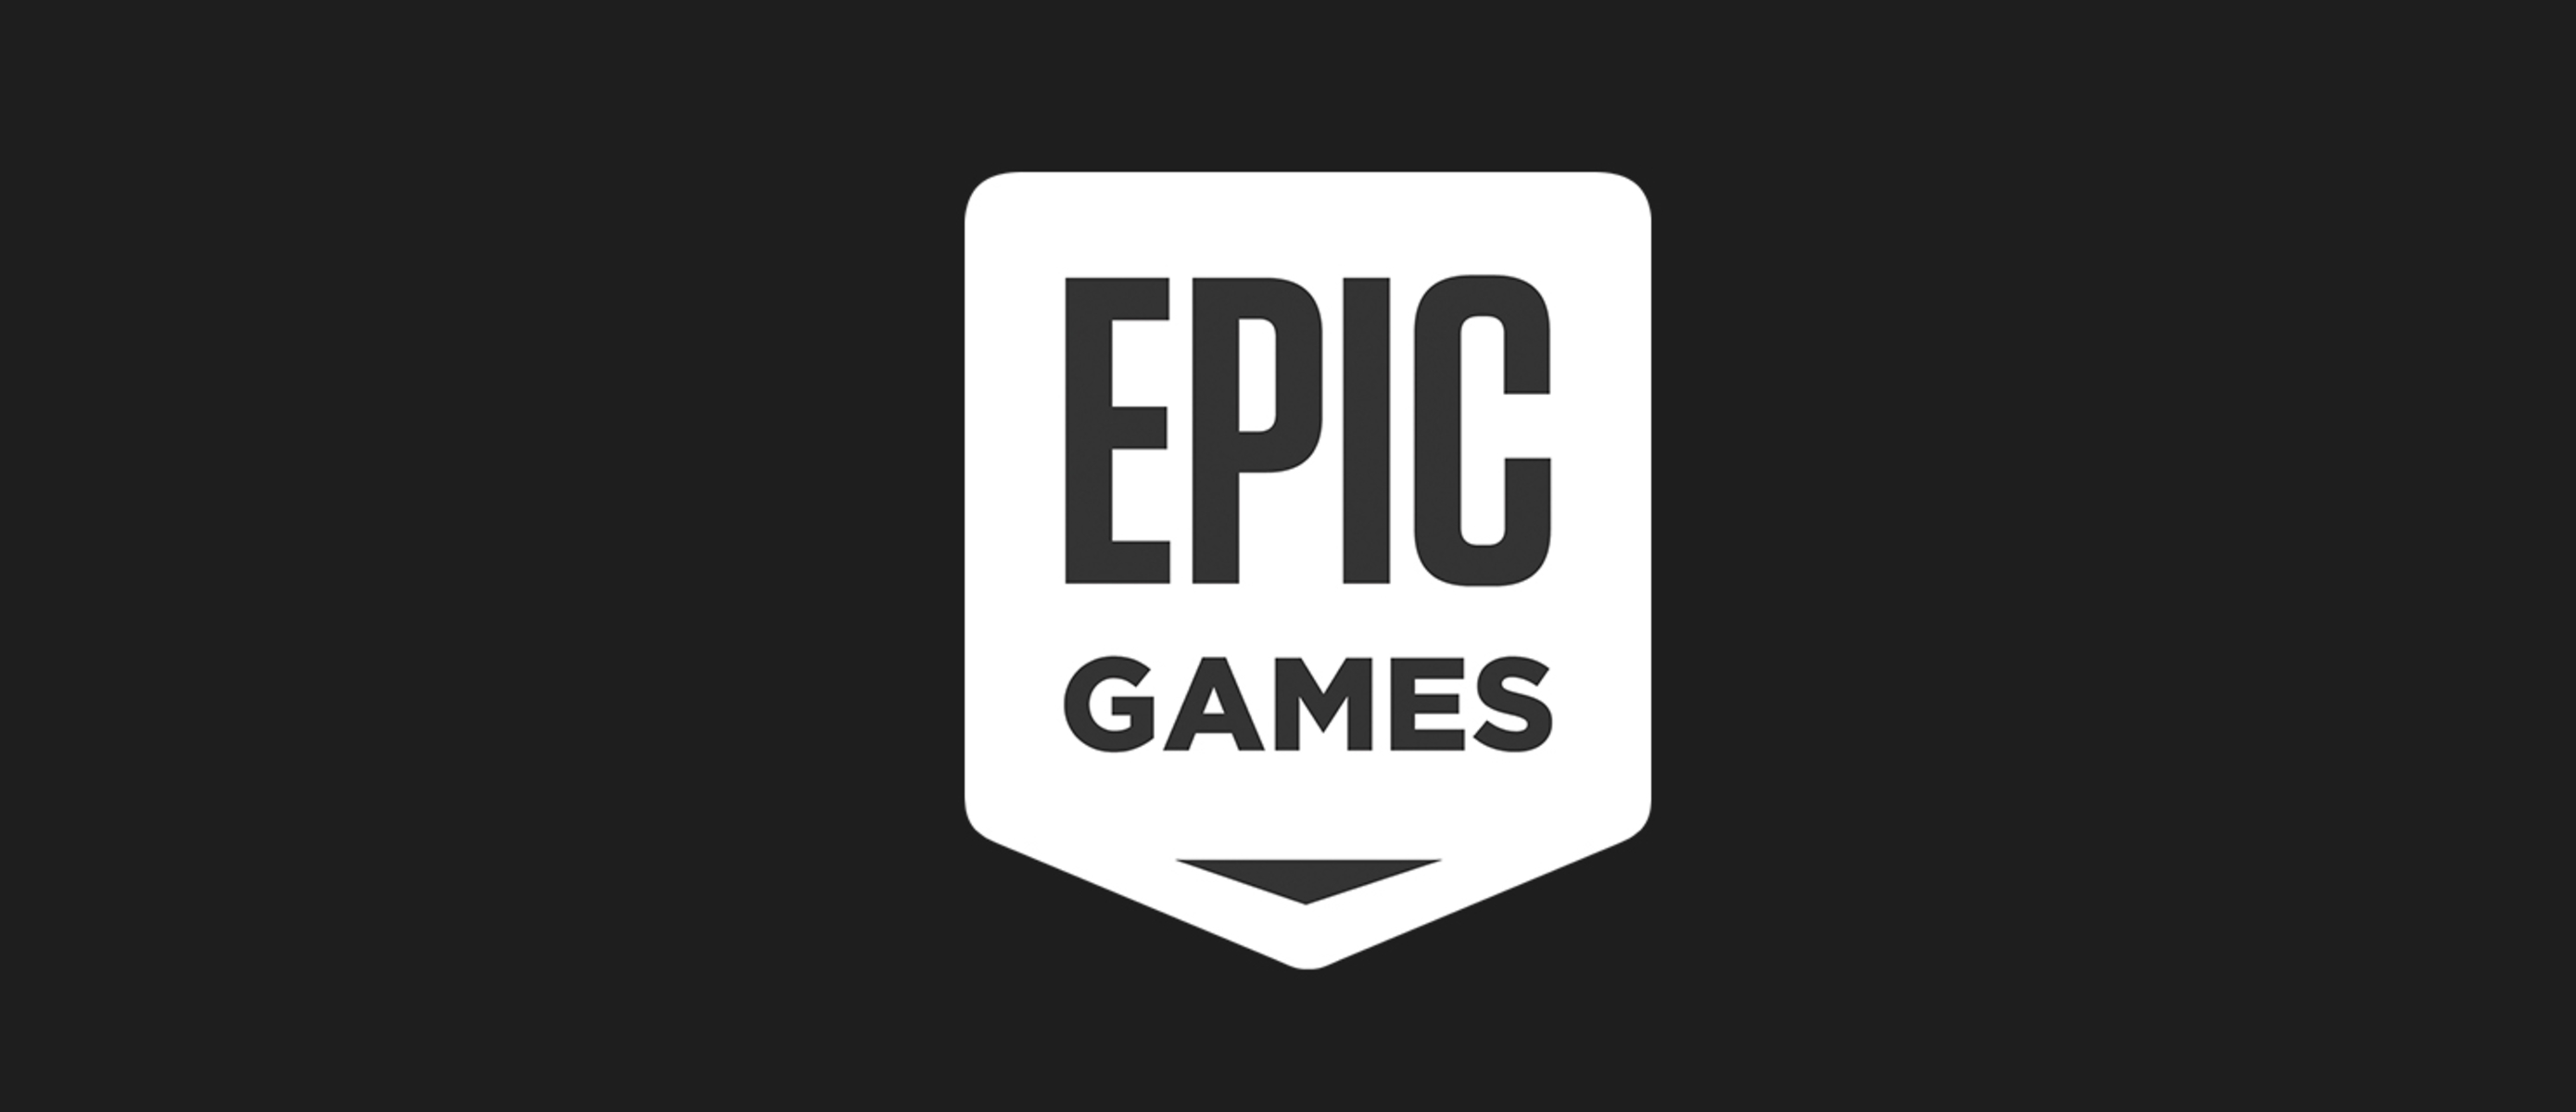 Epic games автора. ЭПИК геймс. Логотип Epic games. ЭПИК гейм стор. ЭПИК геймс обложка.